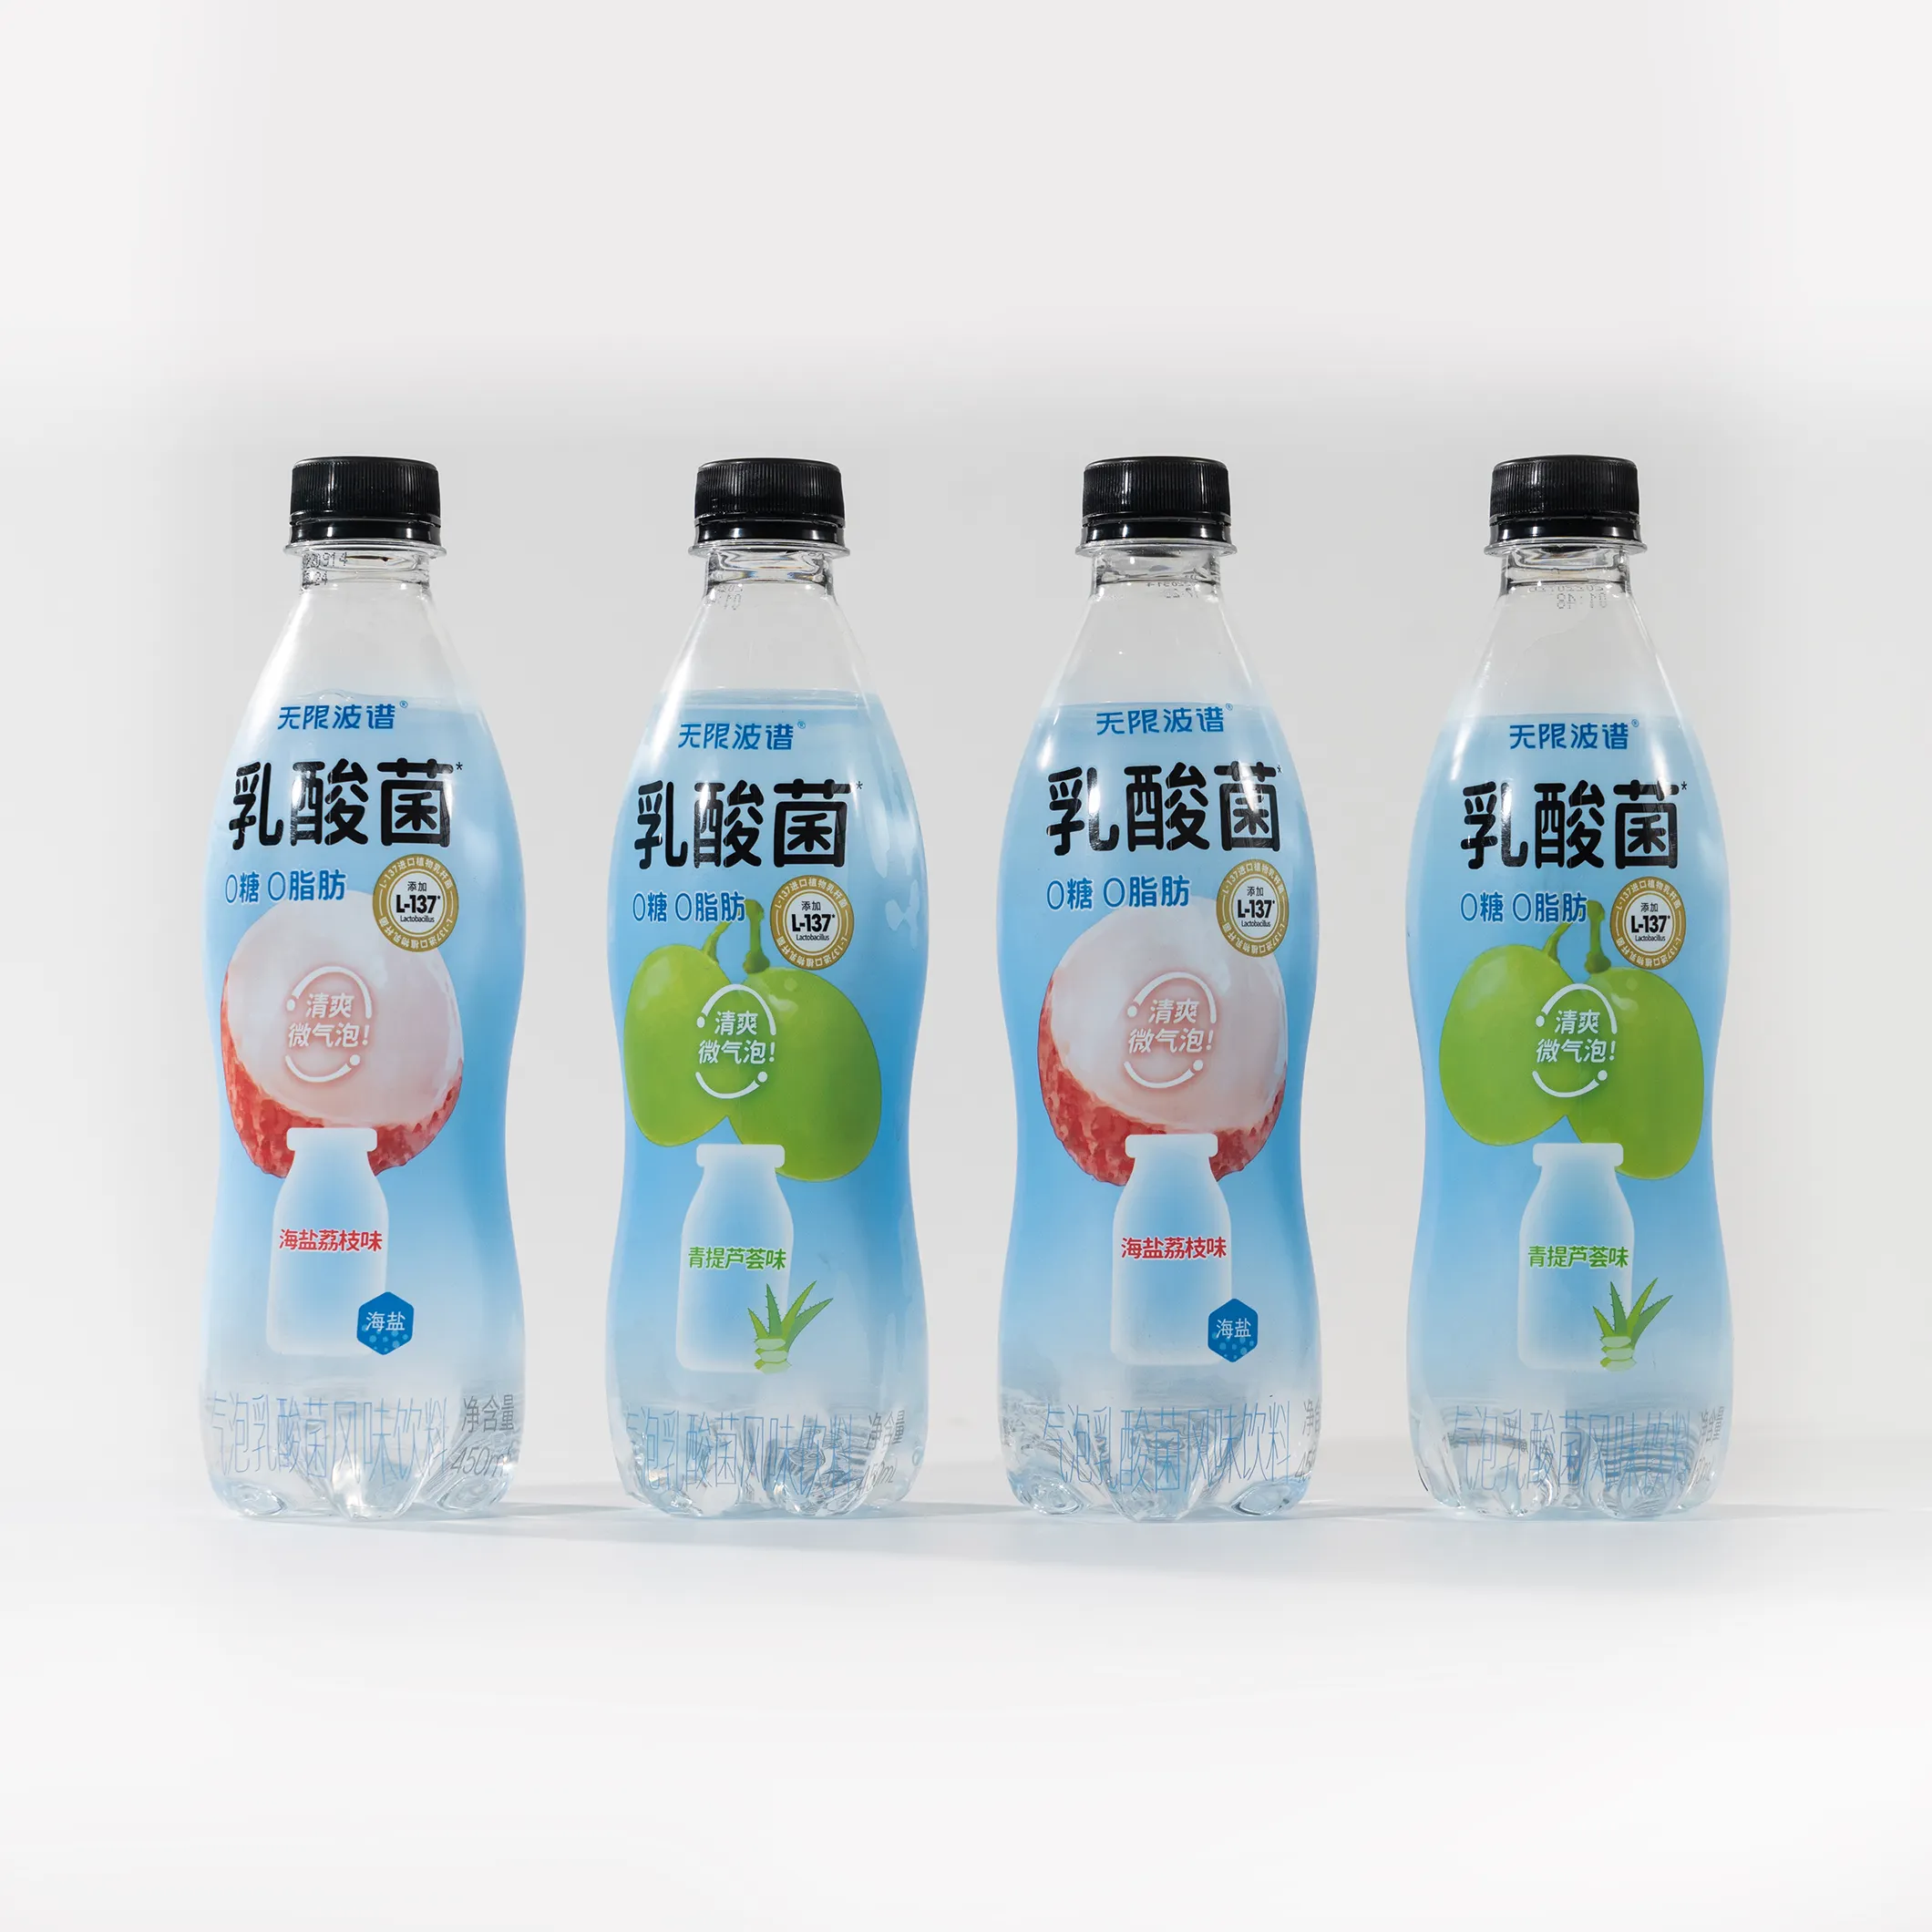 प्लास्टिक की बोतलों के लिए बीओपीपी पर्लाइज्ड रैपिंग लेबल